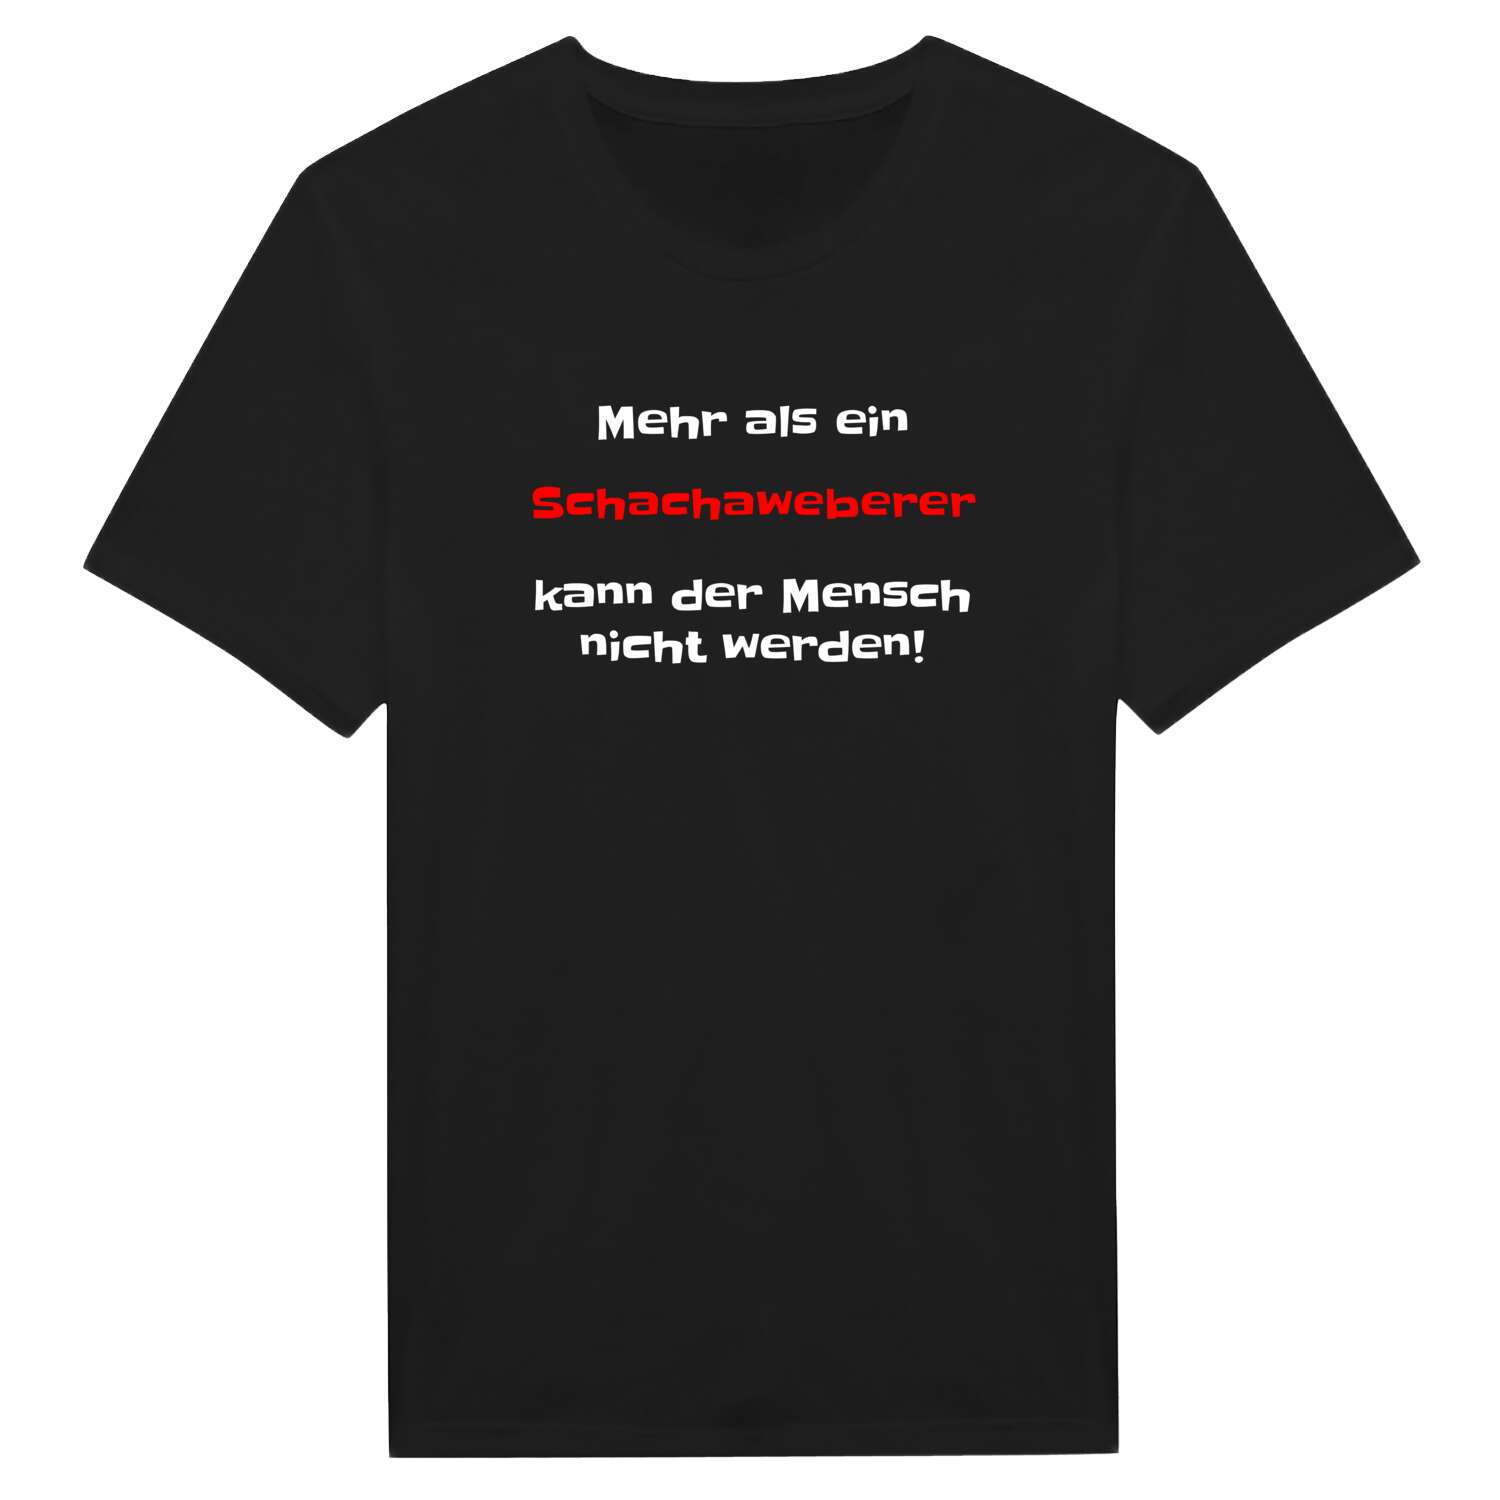 Schachaweber T-Shirt »Mehr als ein«